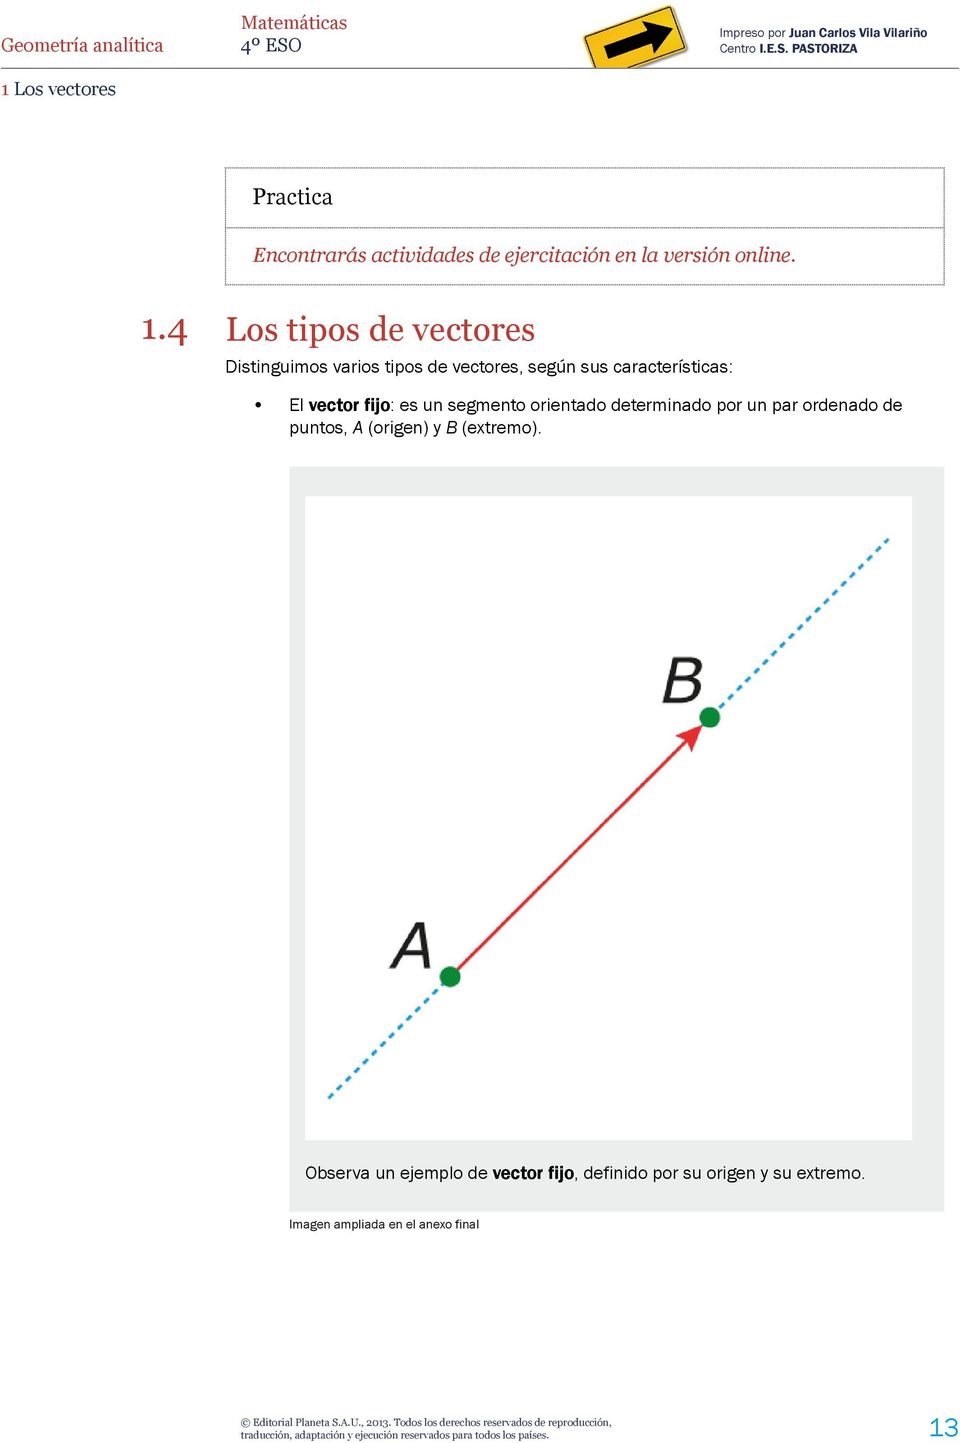 vector fijo: es un segmento orientado determinado por un par ordenado de puntos, A (origen) y B